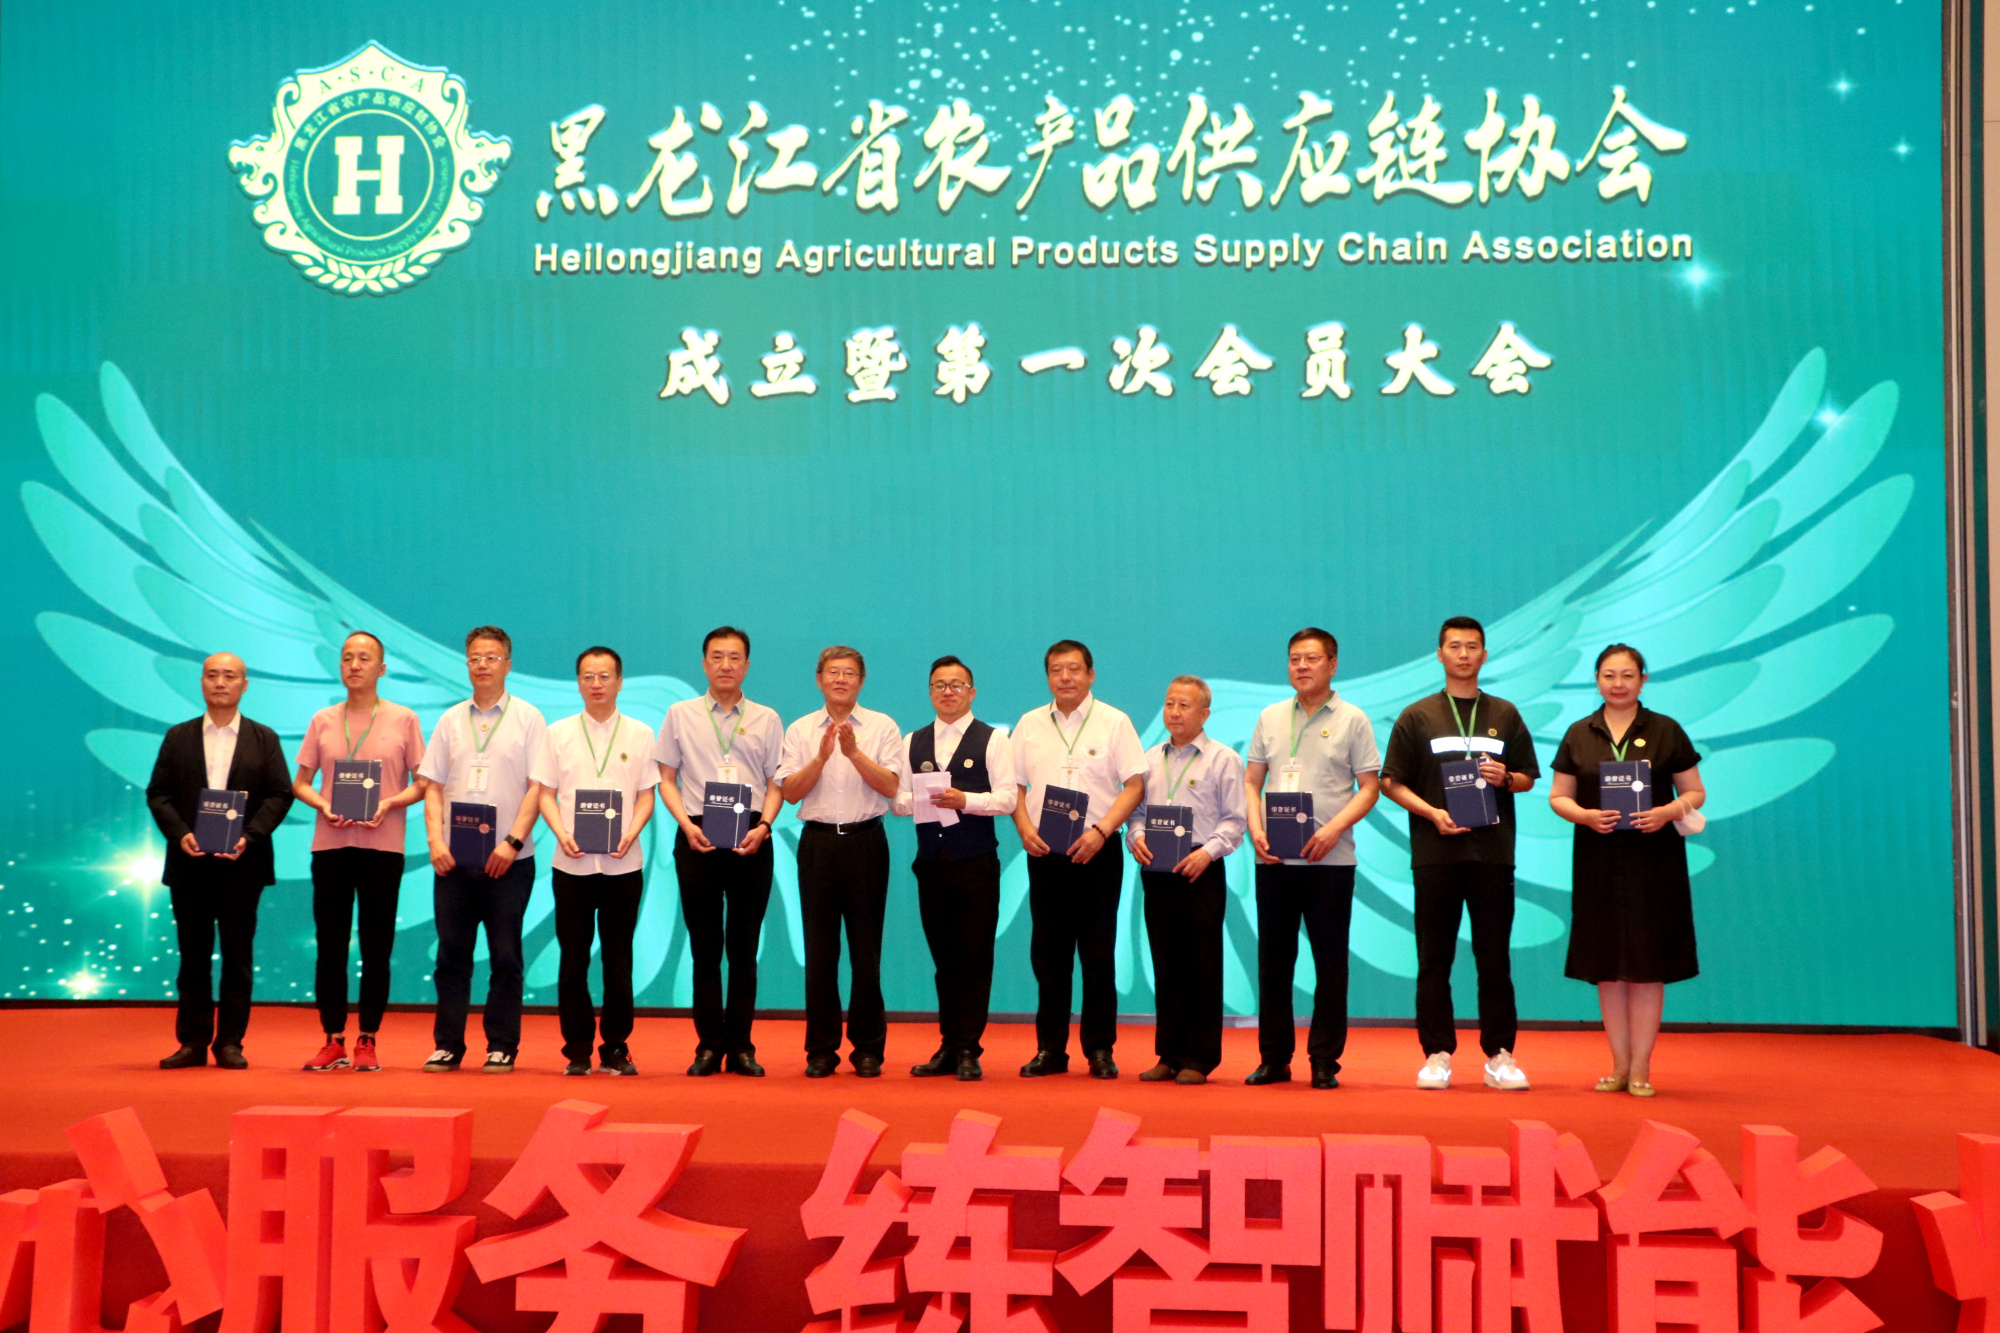 黑龙江省首家农产品供应链协会正式成立